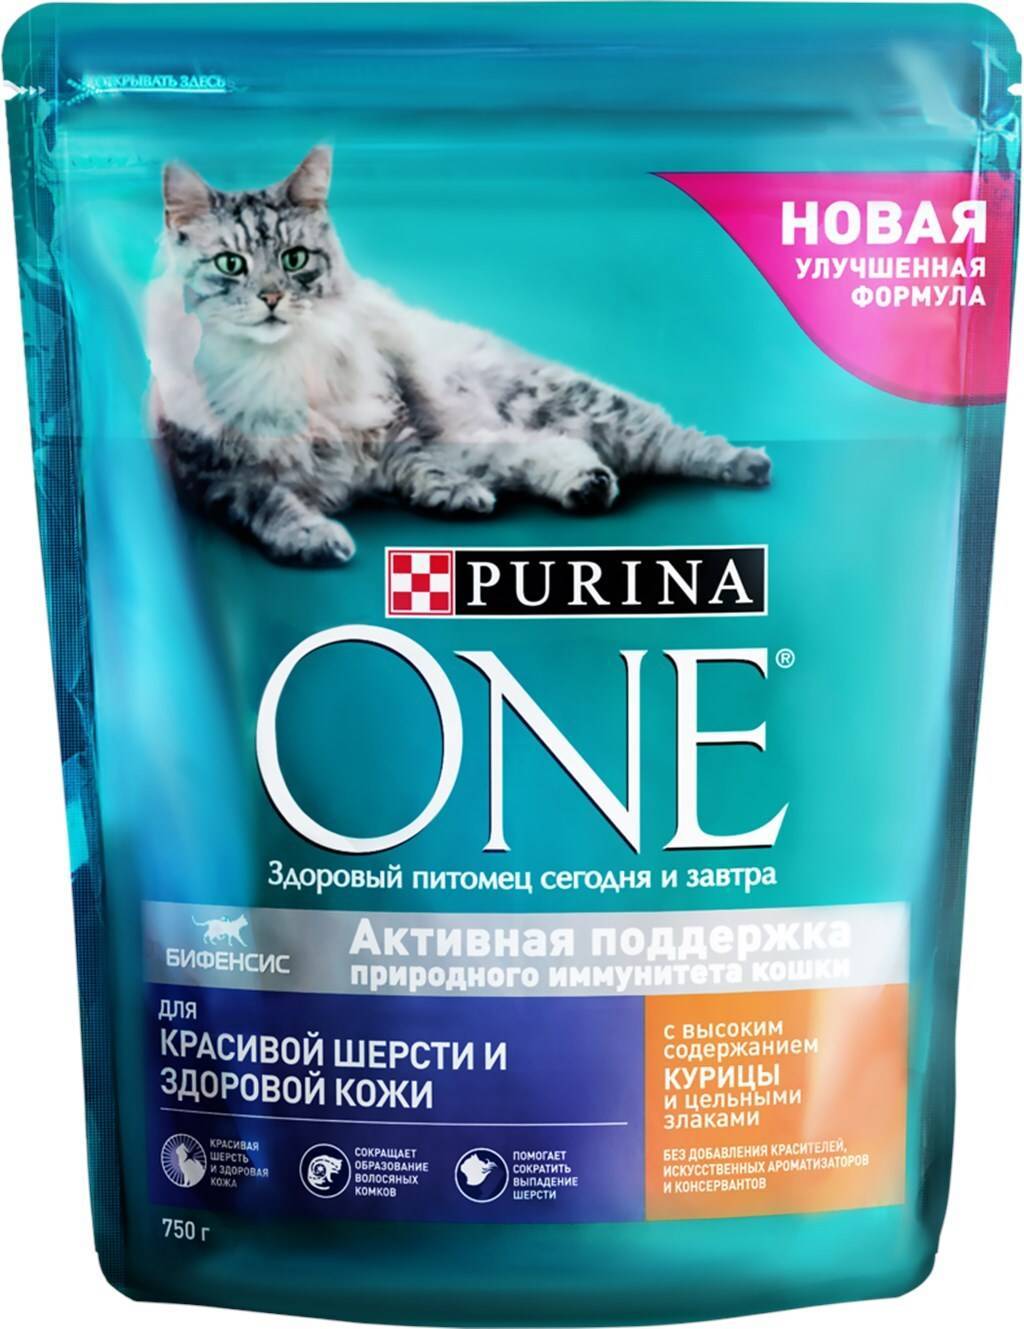 One&only (ван энд онли): обзор корма для кошек, состав, отзывы